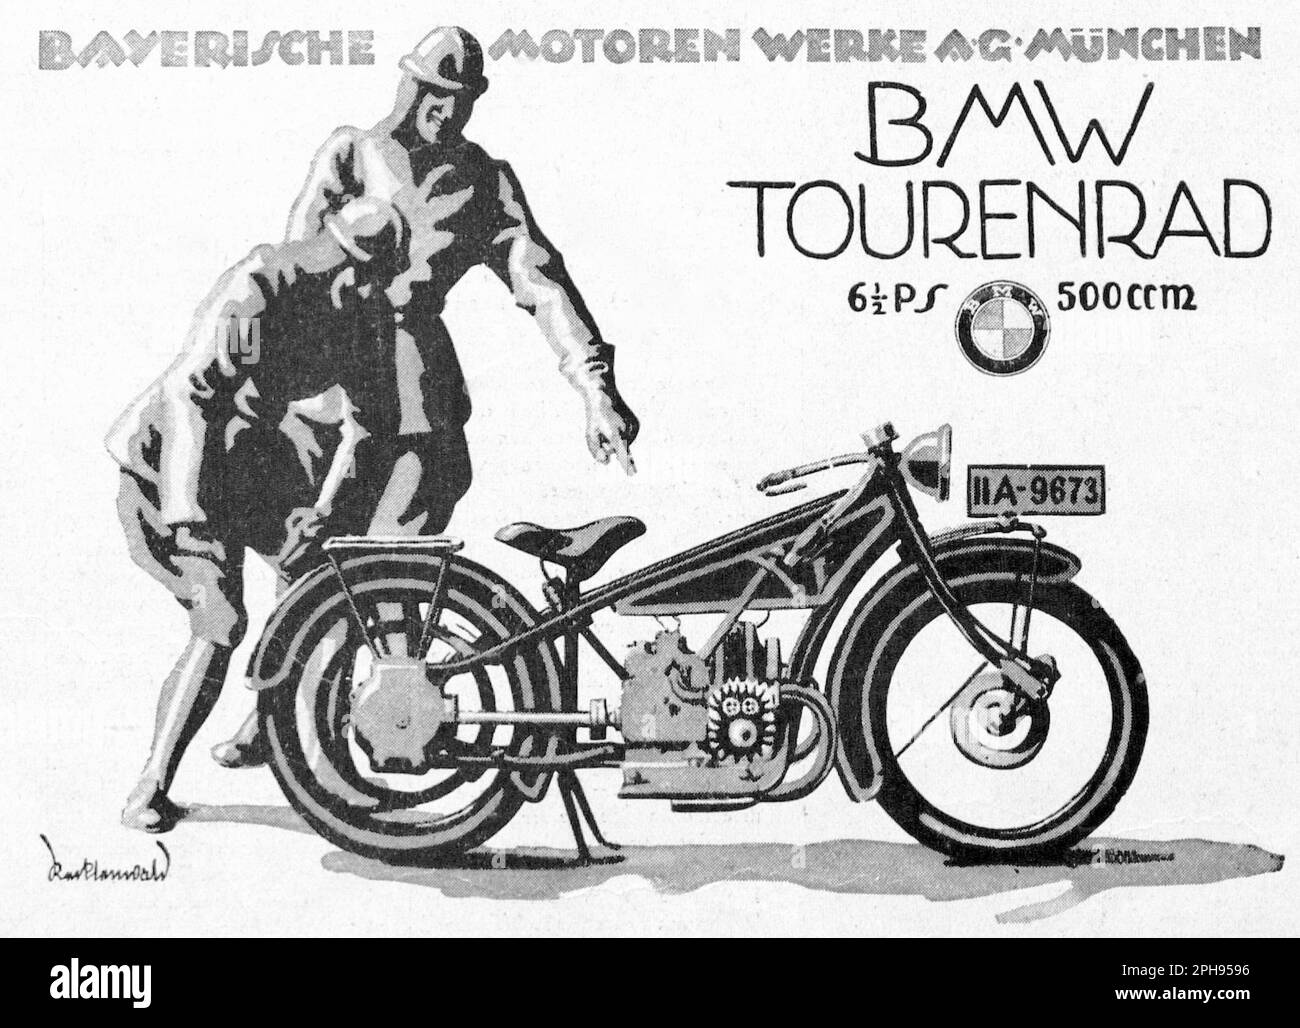 BMW Motorbike advertisement - Illustrazione dalla rivista tedesca di arti Jugend Foto Stock